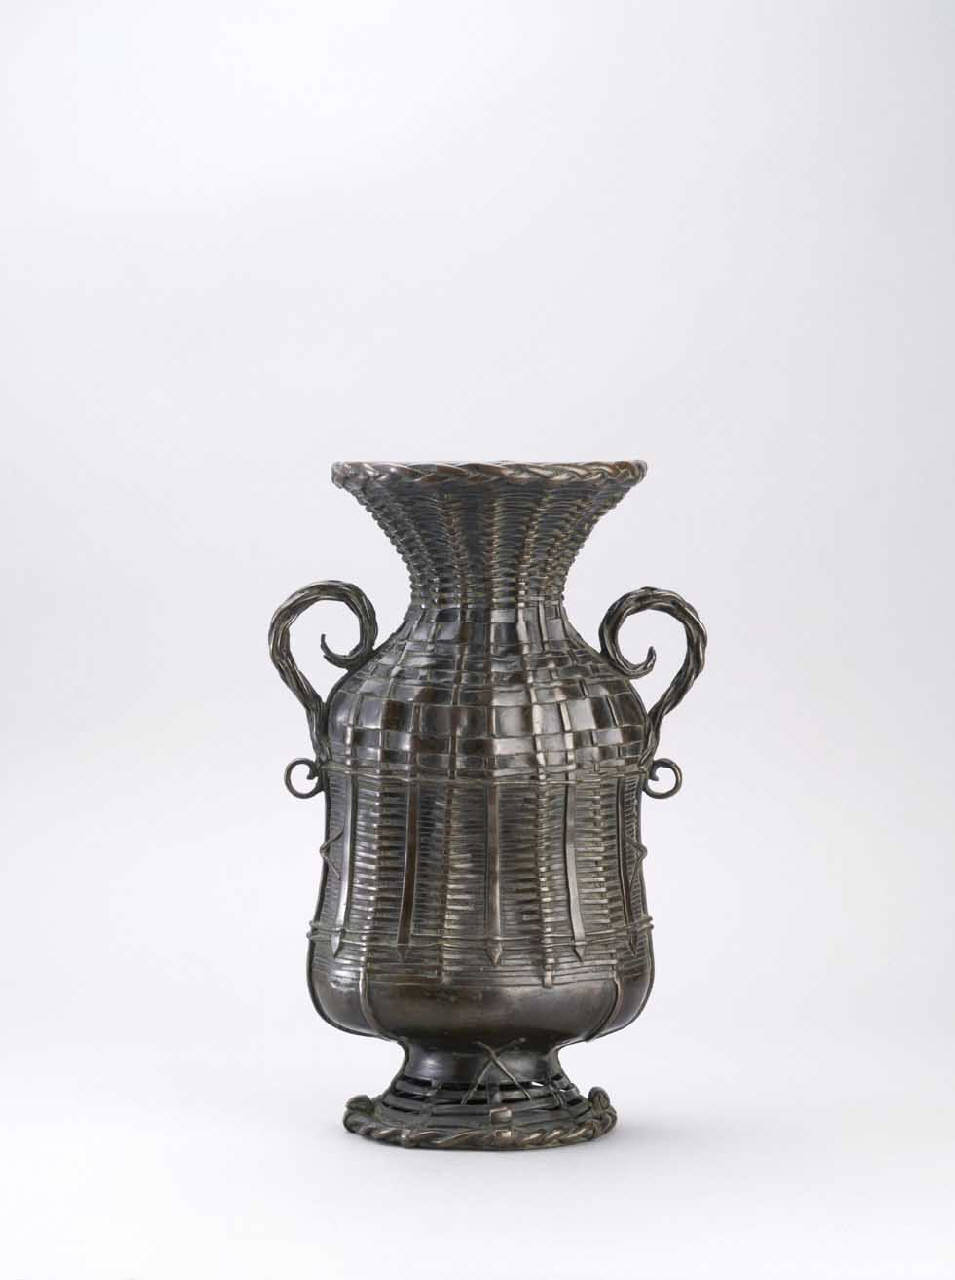 motivo decorativo a intreccio (vaso da fiori) - manifattura giapponese (sec. XIX)